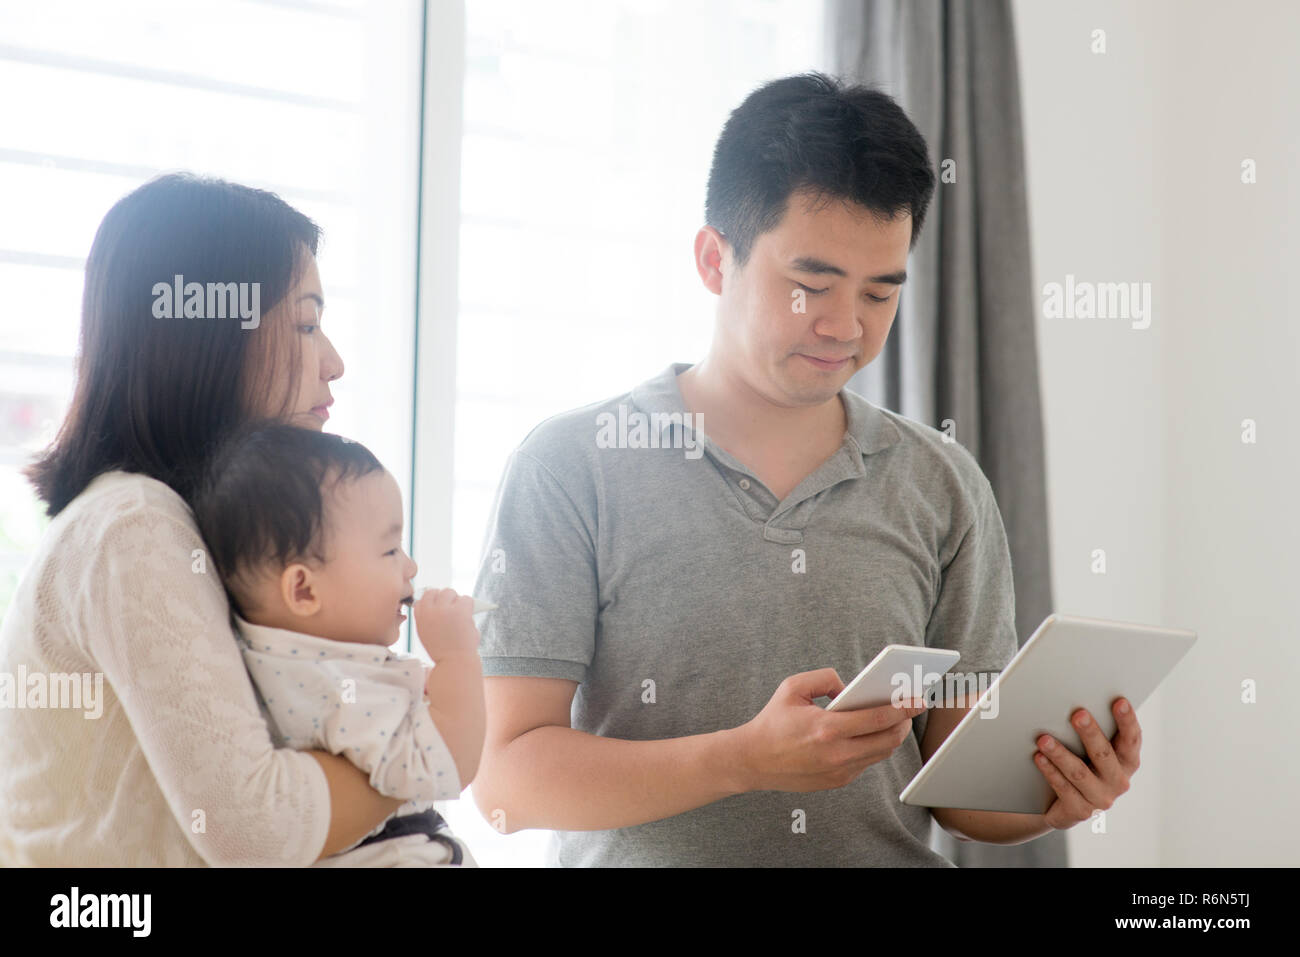 Asiatische Familie scannen QR-Code Stockfoto